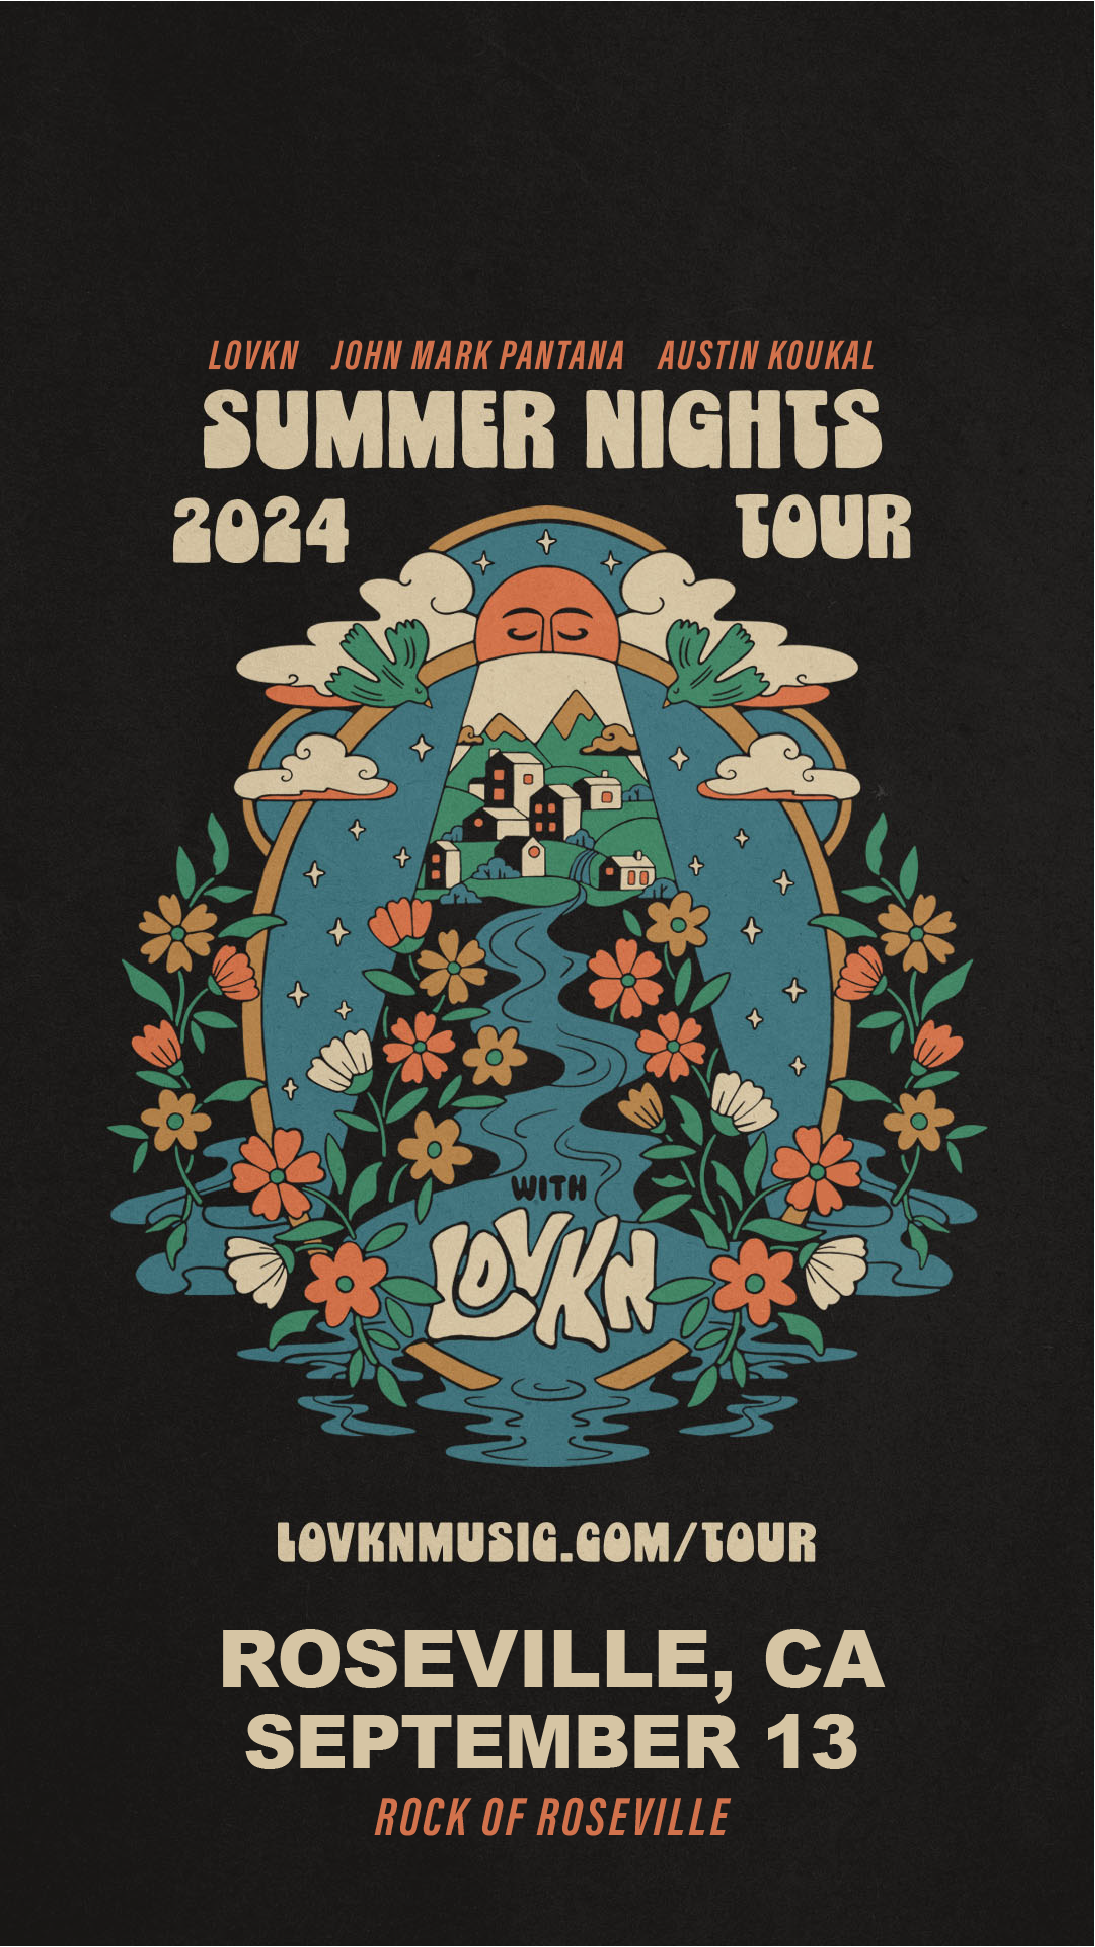 Roseville, CA | September 13 | LOVKN Summer Nights Tour 2024 (w/John Mark Pantana, Austin Koukal)